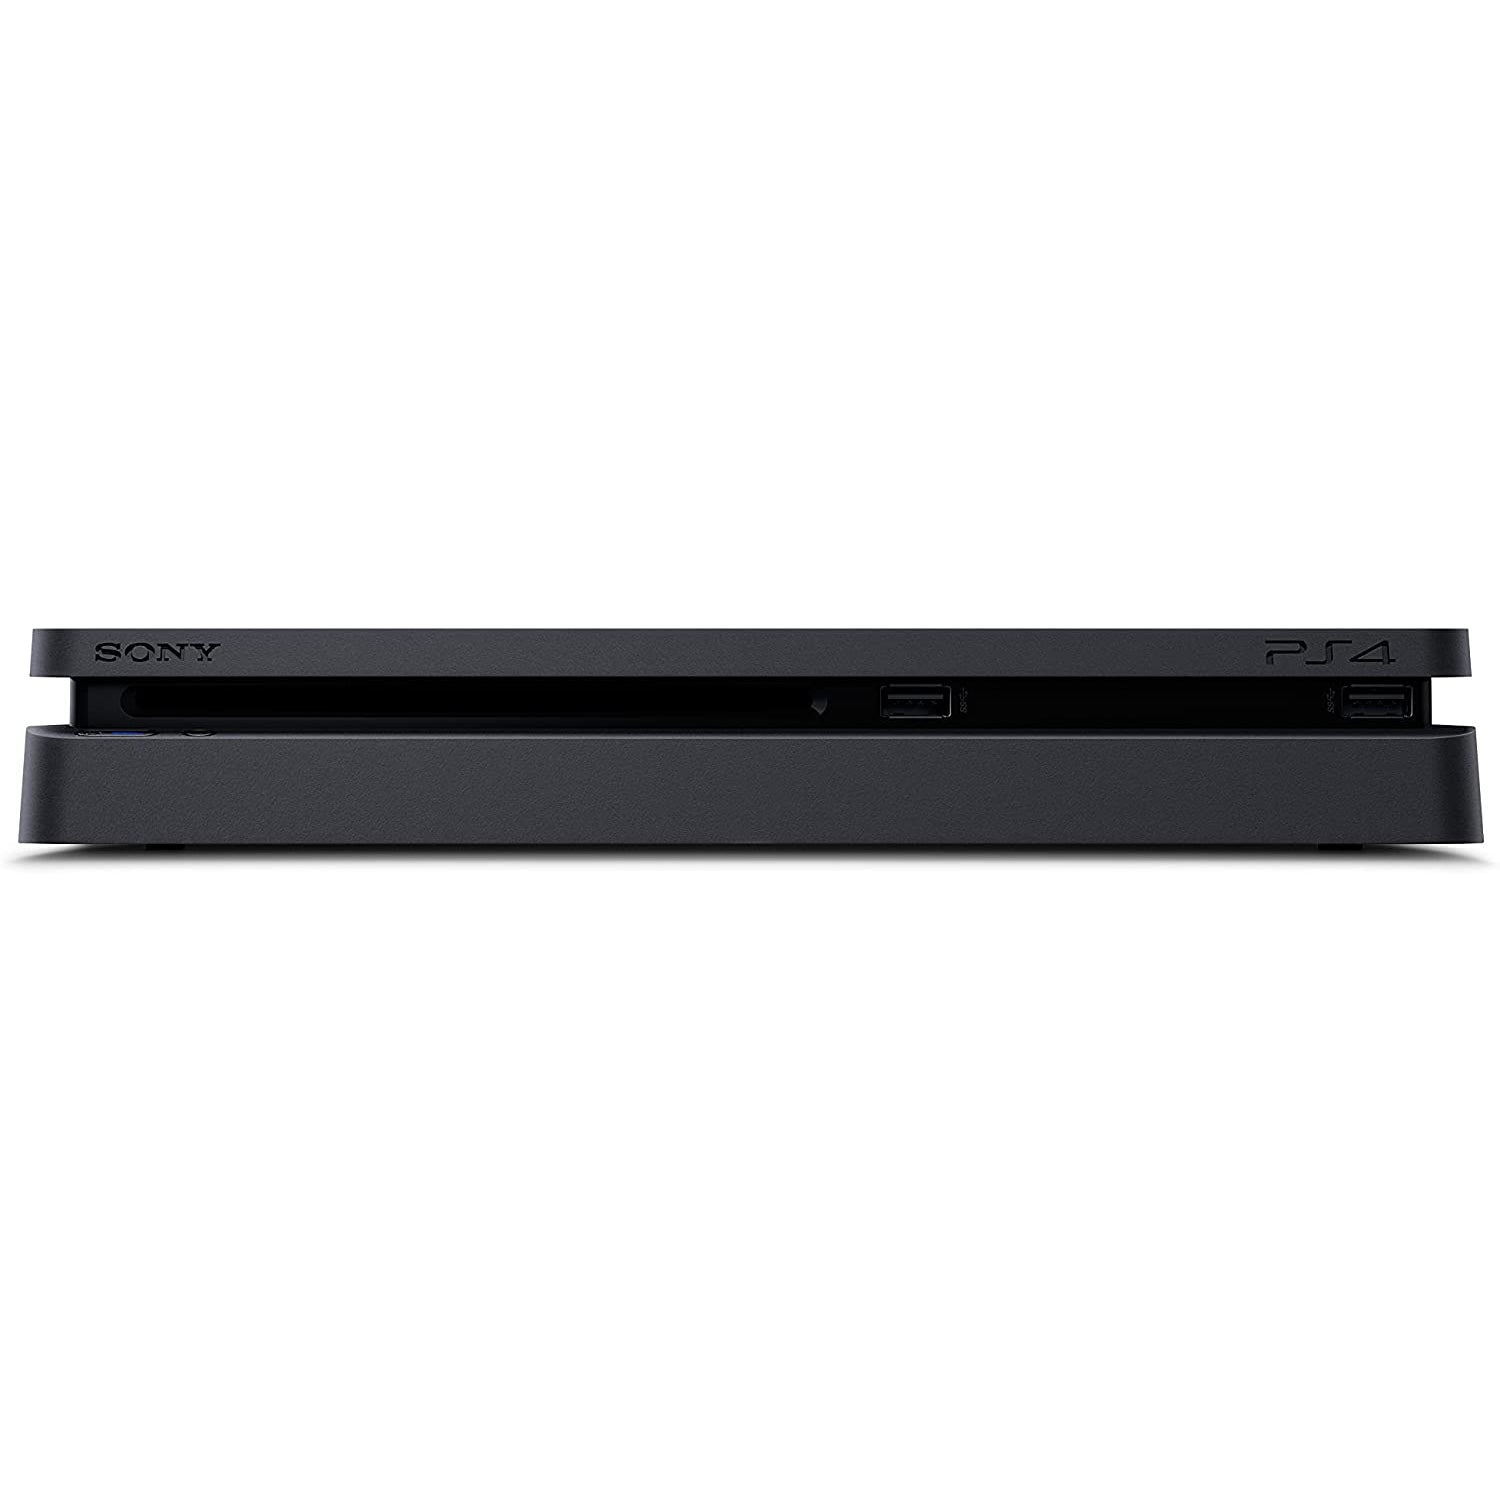 Sony-PlayStation-4-Slim-Console-500GB-4_e8bf39ab-ed6e-4e6c-a168-916c2771c1ed